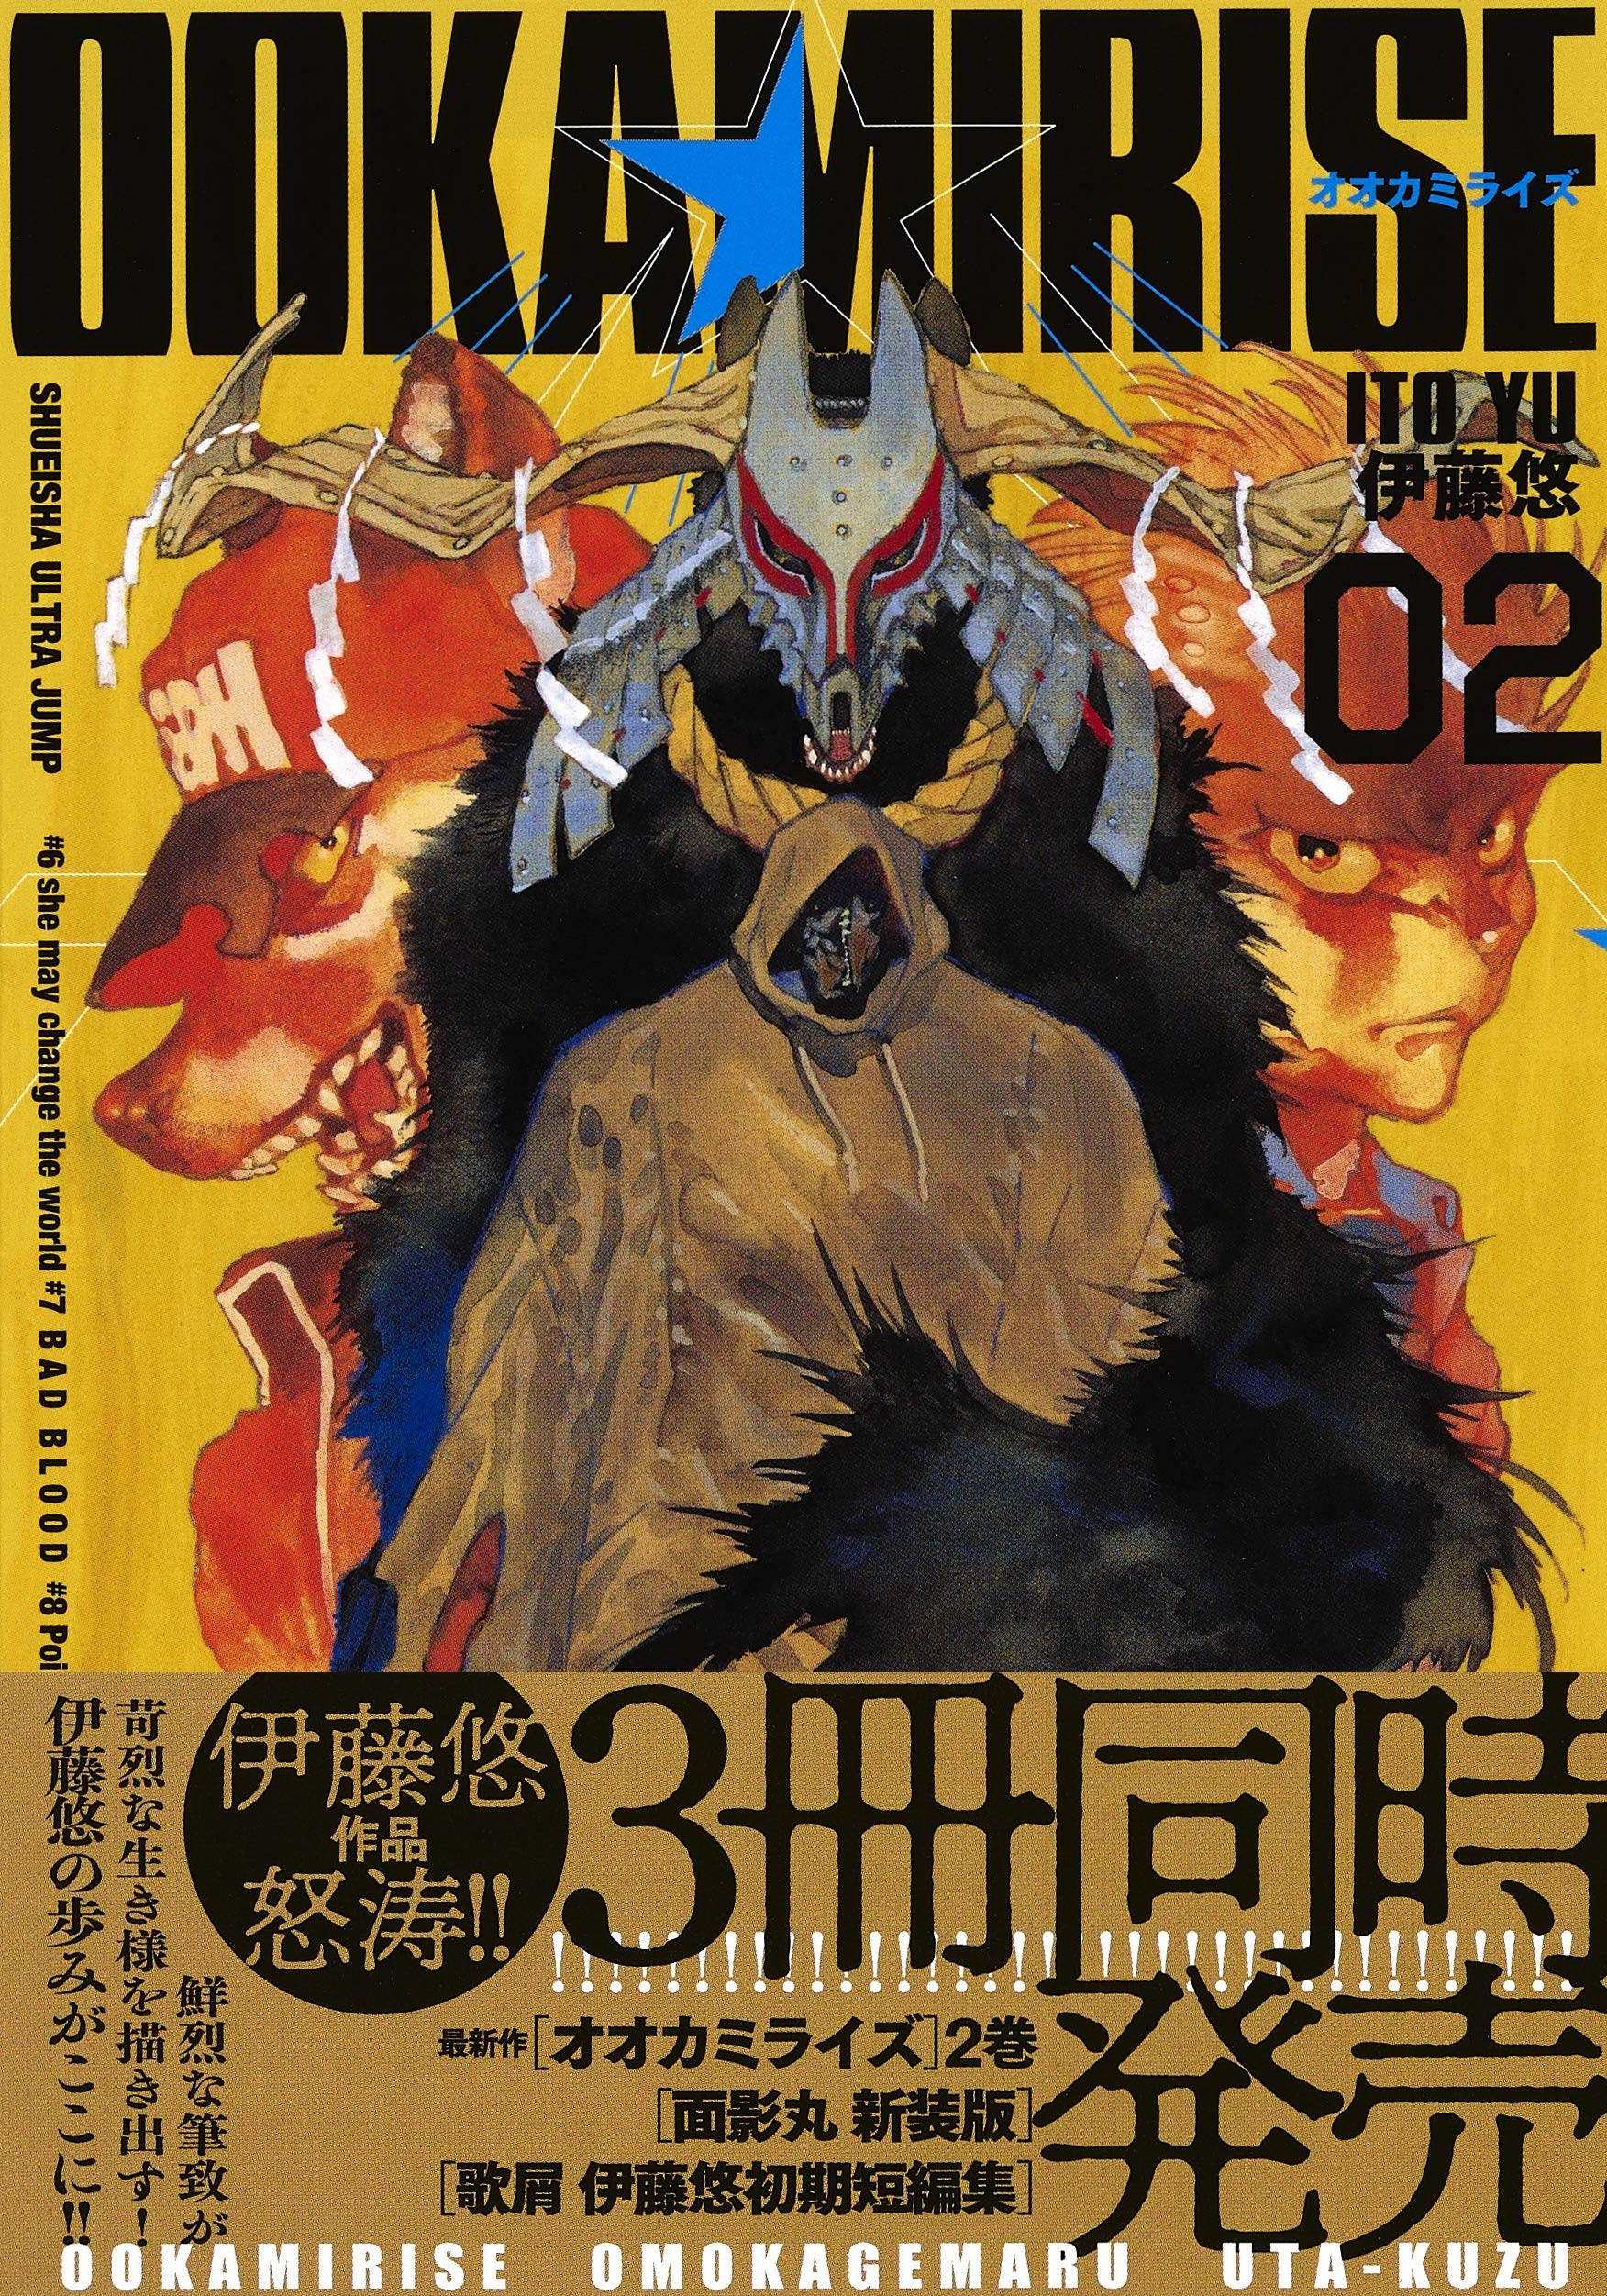 Manga Ookami Rise vol.2 (オオカミライズ 2 (ヤングジャンプコミックス))  / Itoh Yu & 伊藤 悠